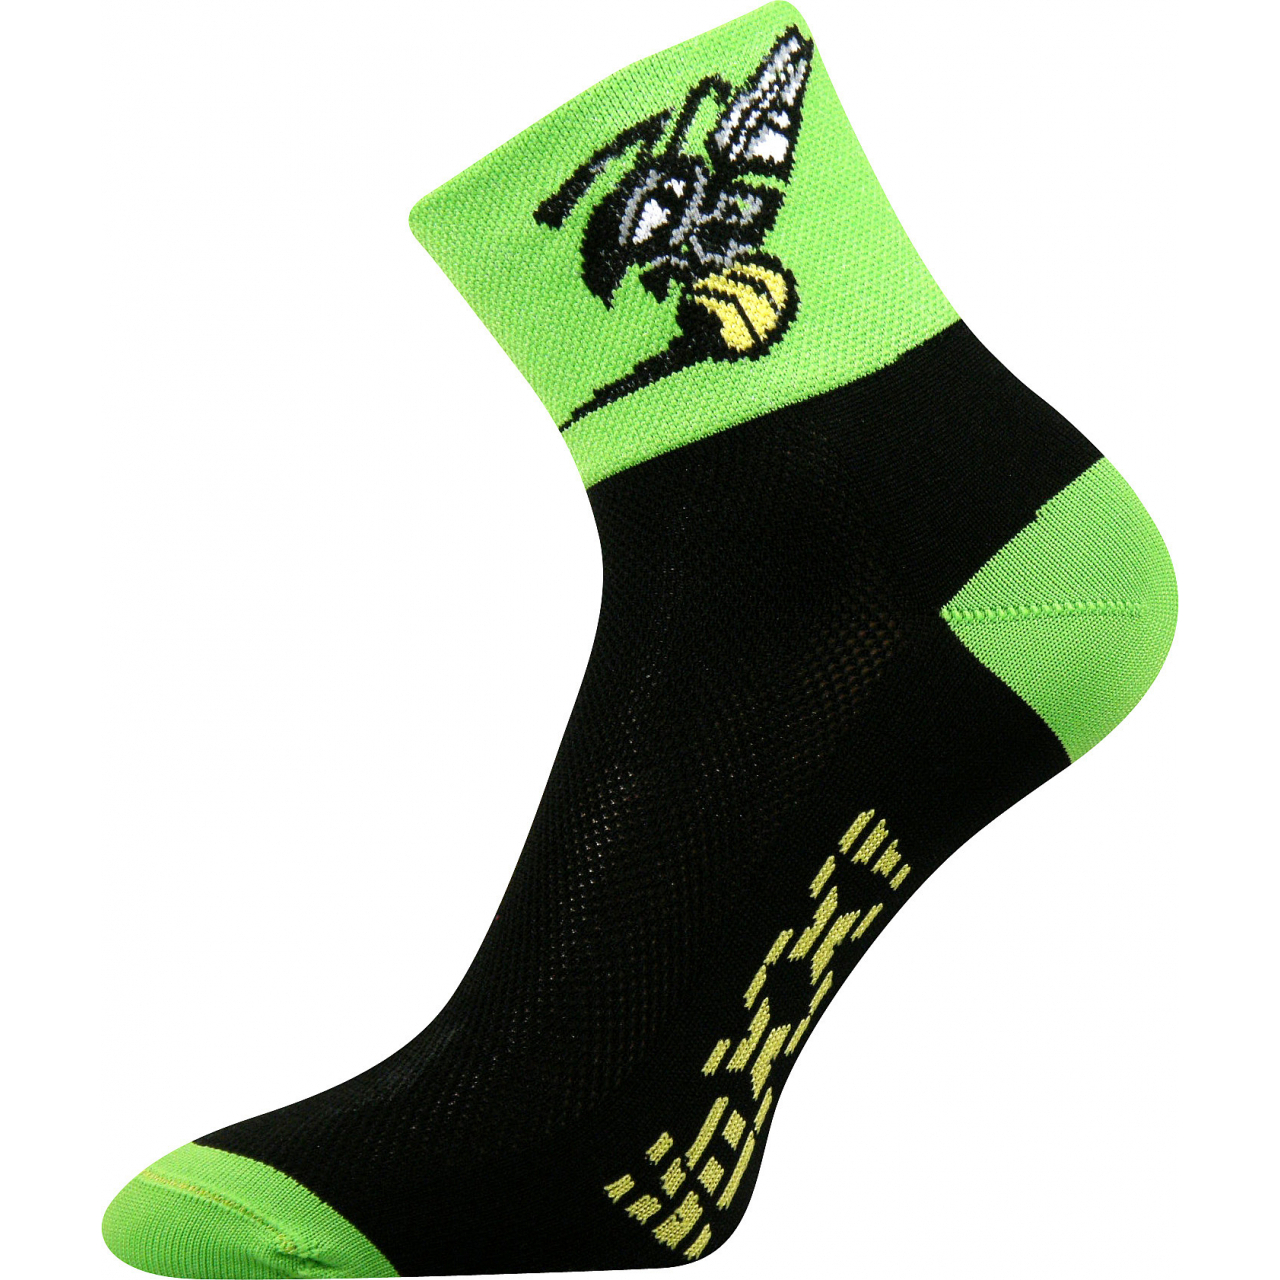 Ponožky sportovní unisex Voxx Ralf X Vosa - černé-zelené, 39-42